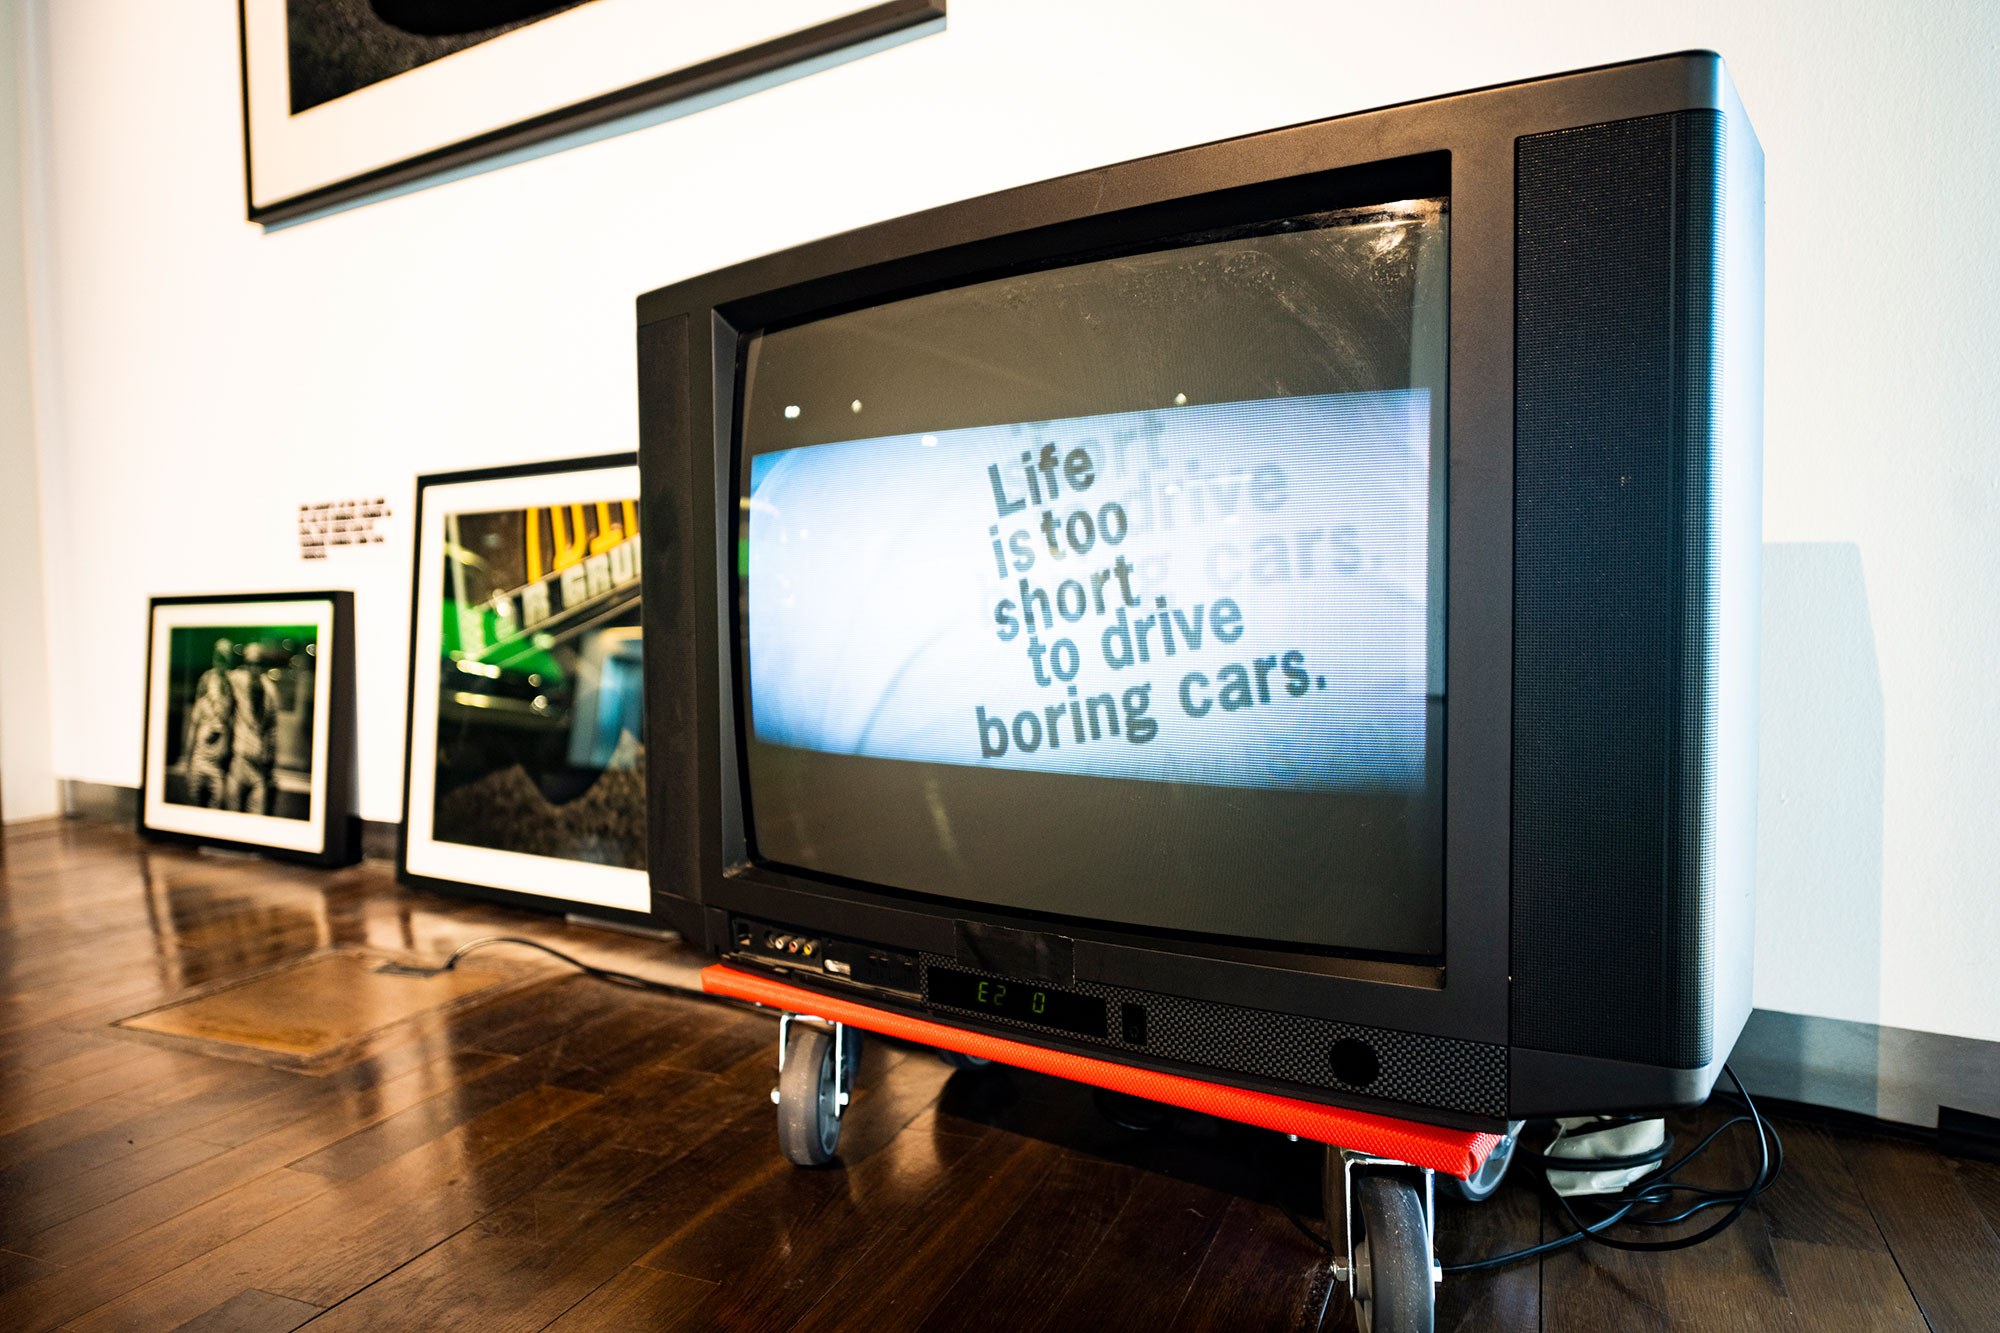 Fotografie eines Fernsehapparats auf einem Rollbrett in einem Ausstellungsraum. Links daneben lehnen zwei gerahmte Fotografien an einer weißen Wand.